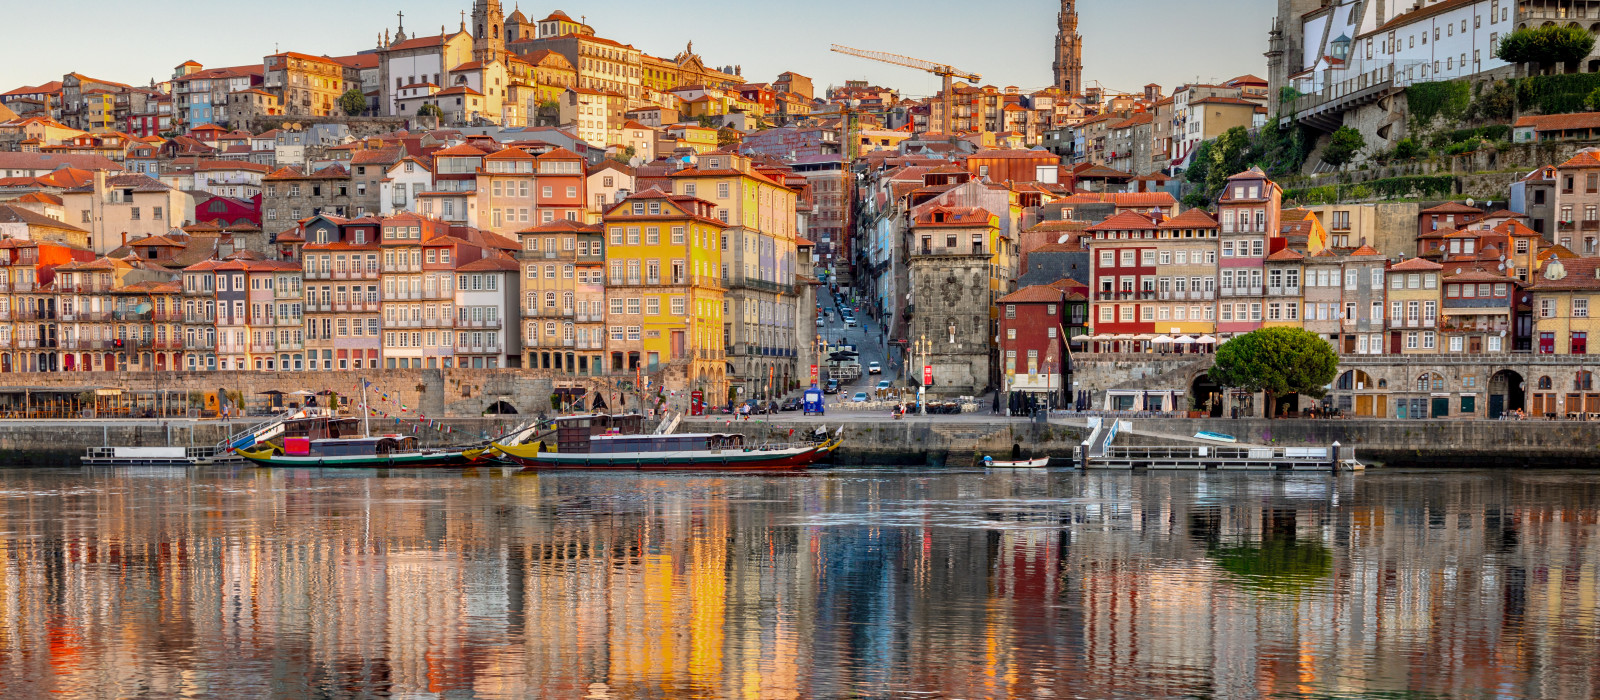 Porto : Porto Plus Aveiro Costa Nova Douro Und Braga 3 Tages Tour 2021 Tiefpreisgarantie